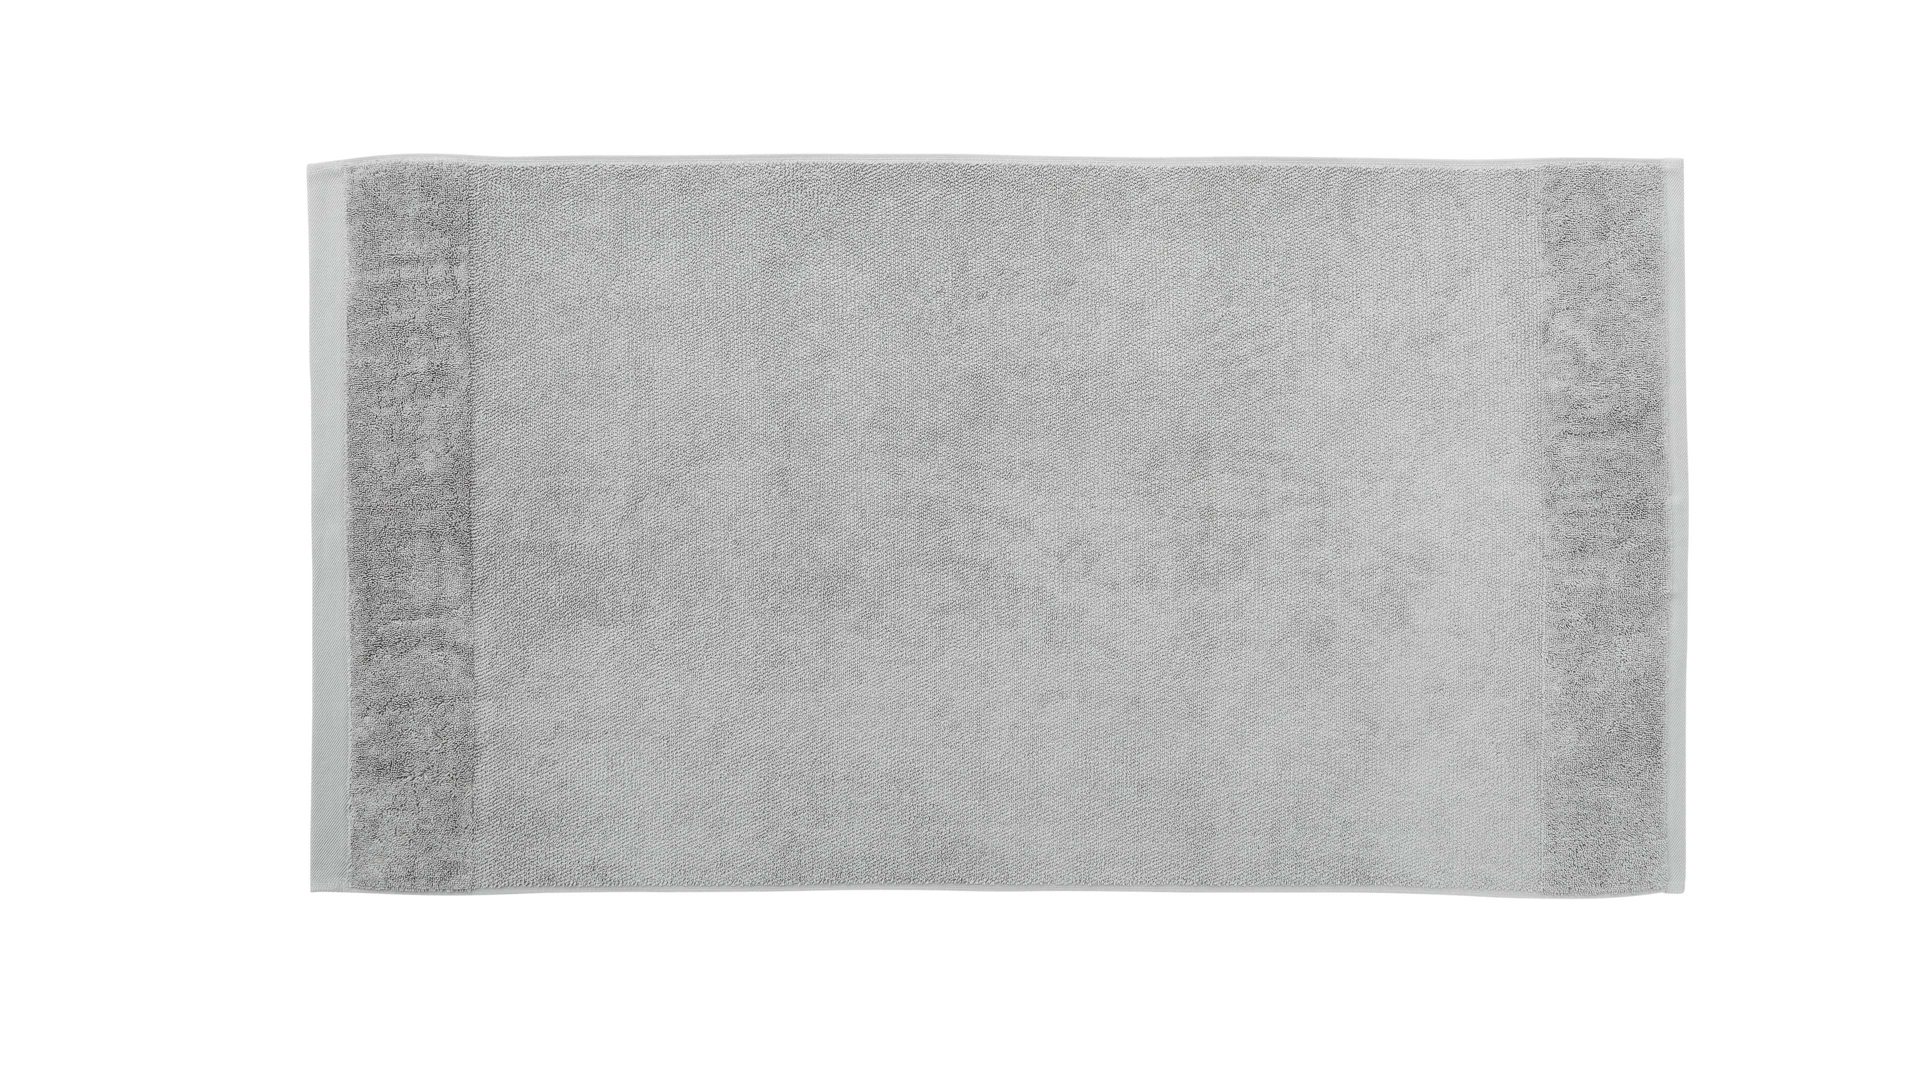 Handtuch Interliving aus Naturfaser in Grau Interliving Handtuch Serie 9108 - Handtuch Silber – ca. 60 x 110 cm